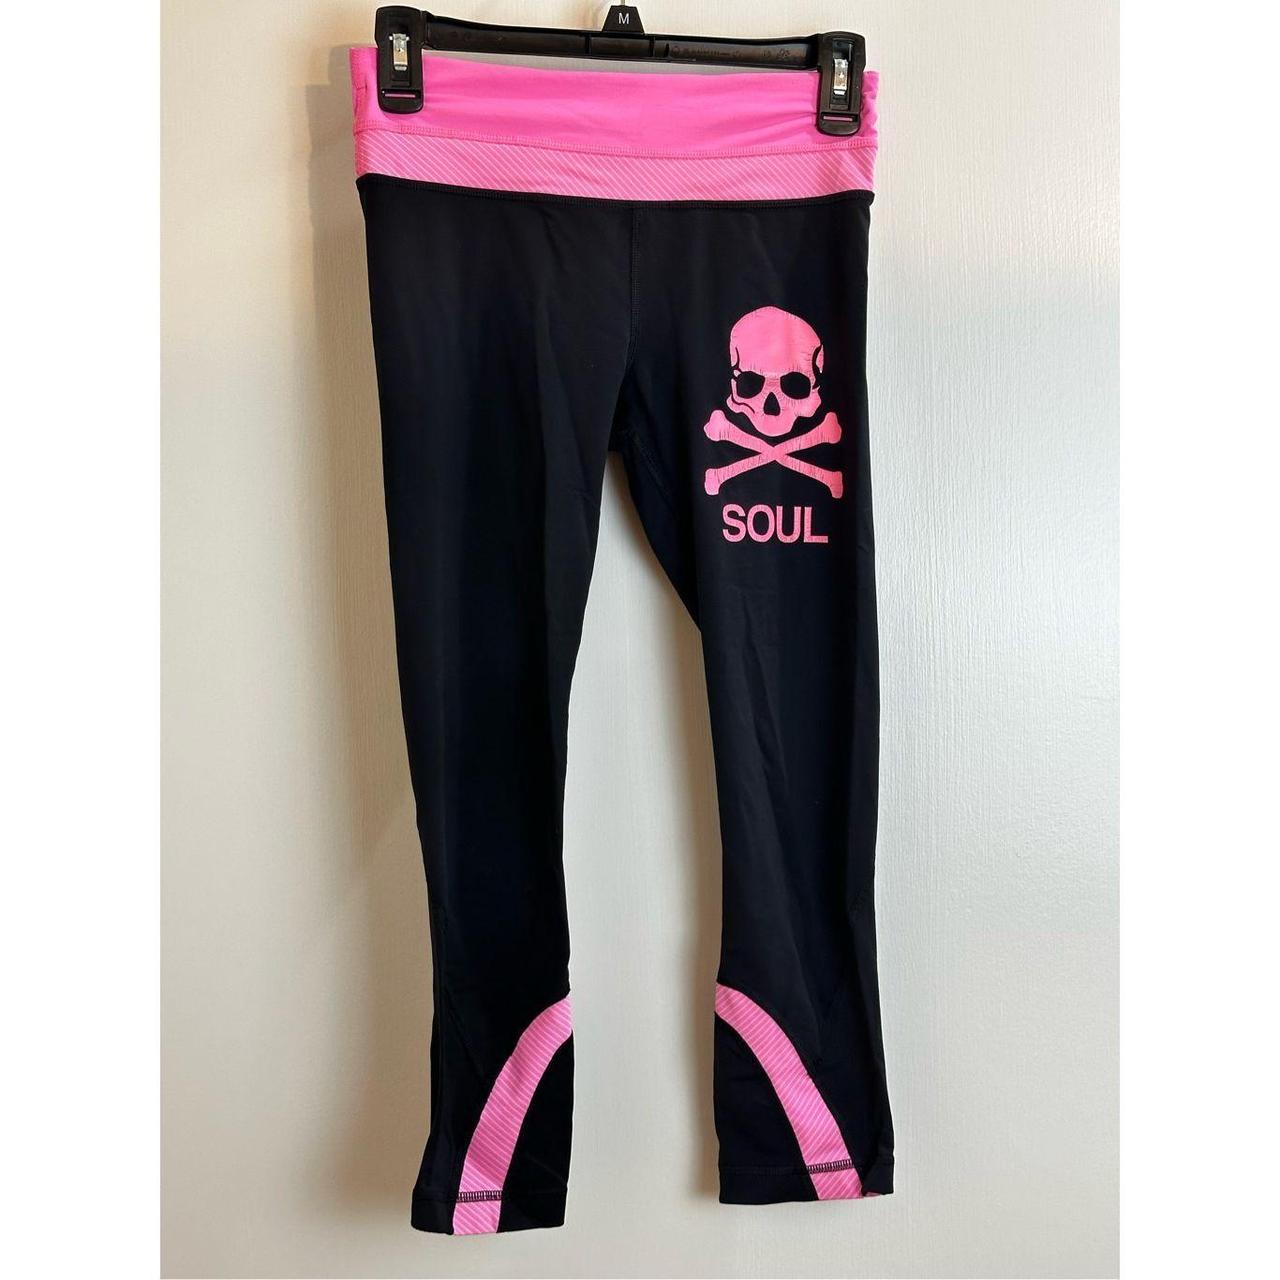 Lululemon black and pink black leggings. Size 4 - Depop